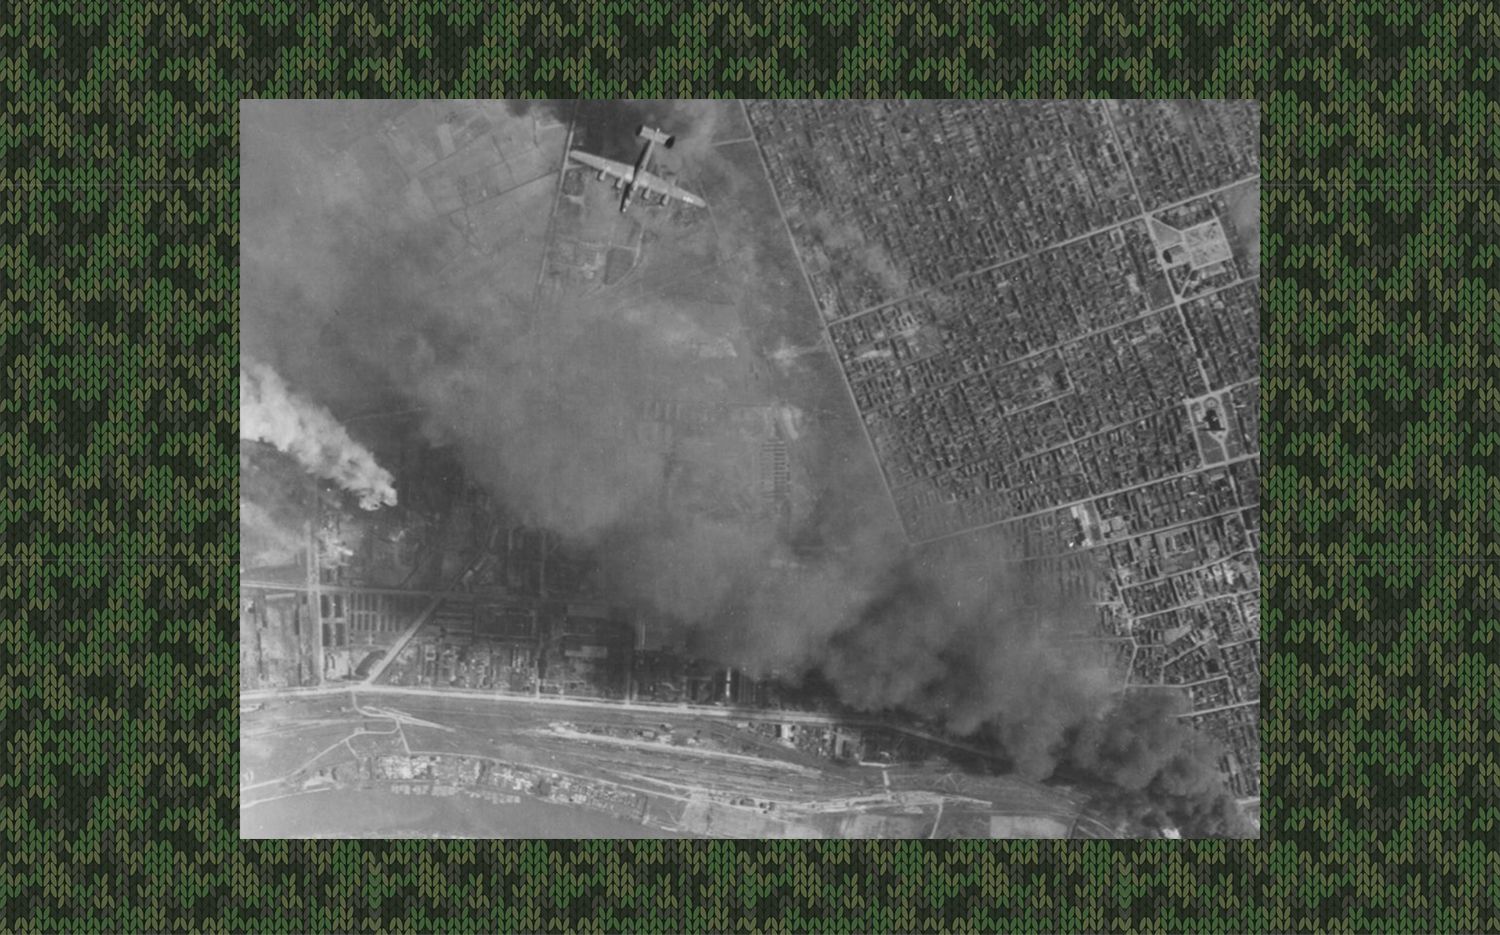 B-24 Liberator<br />Soroksár és környékének bombázása<br />Fortepan / National Archives